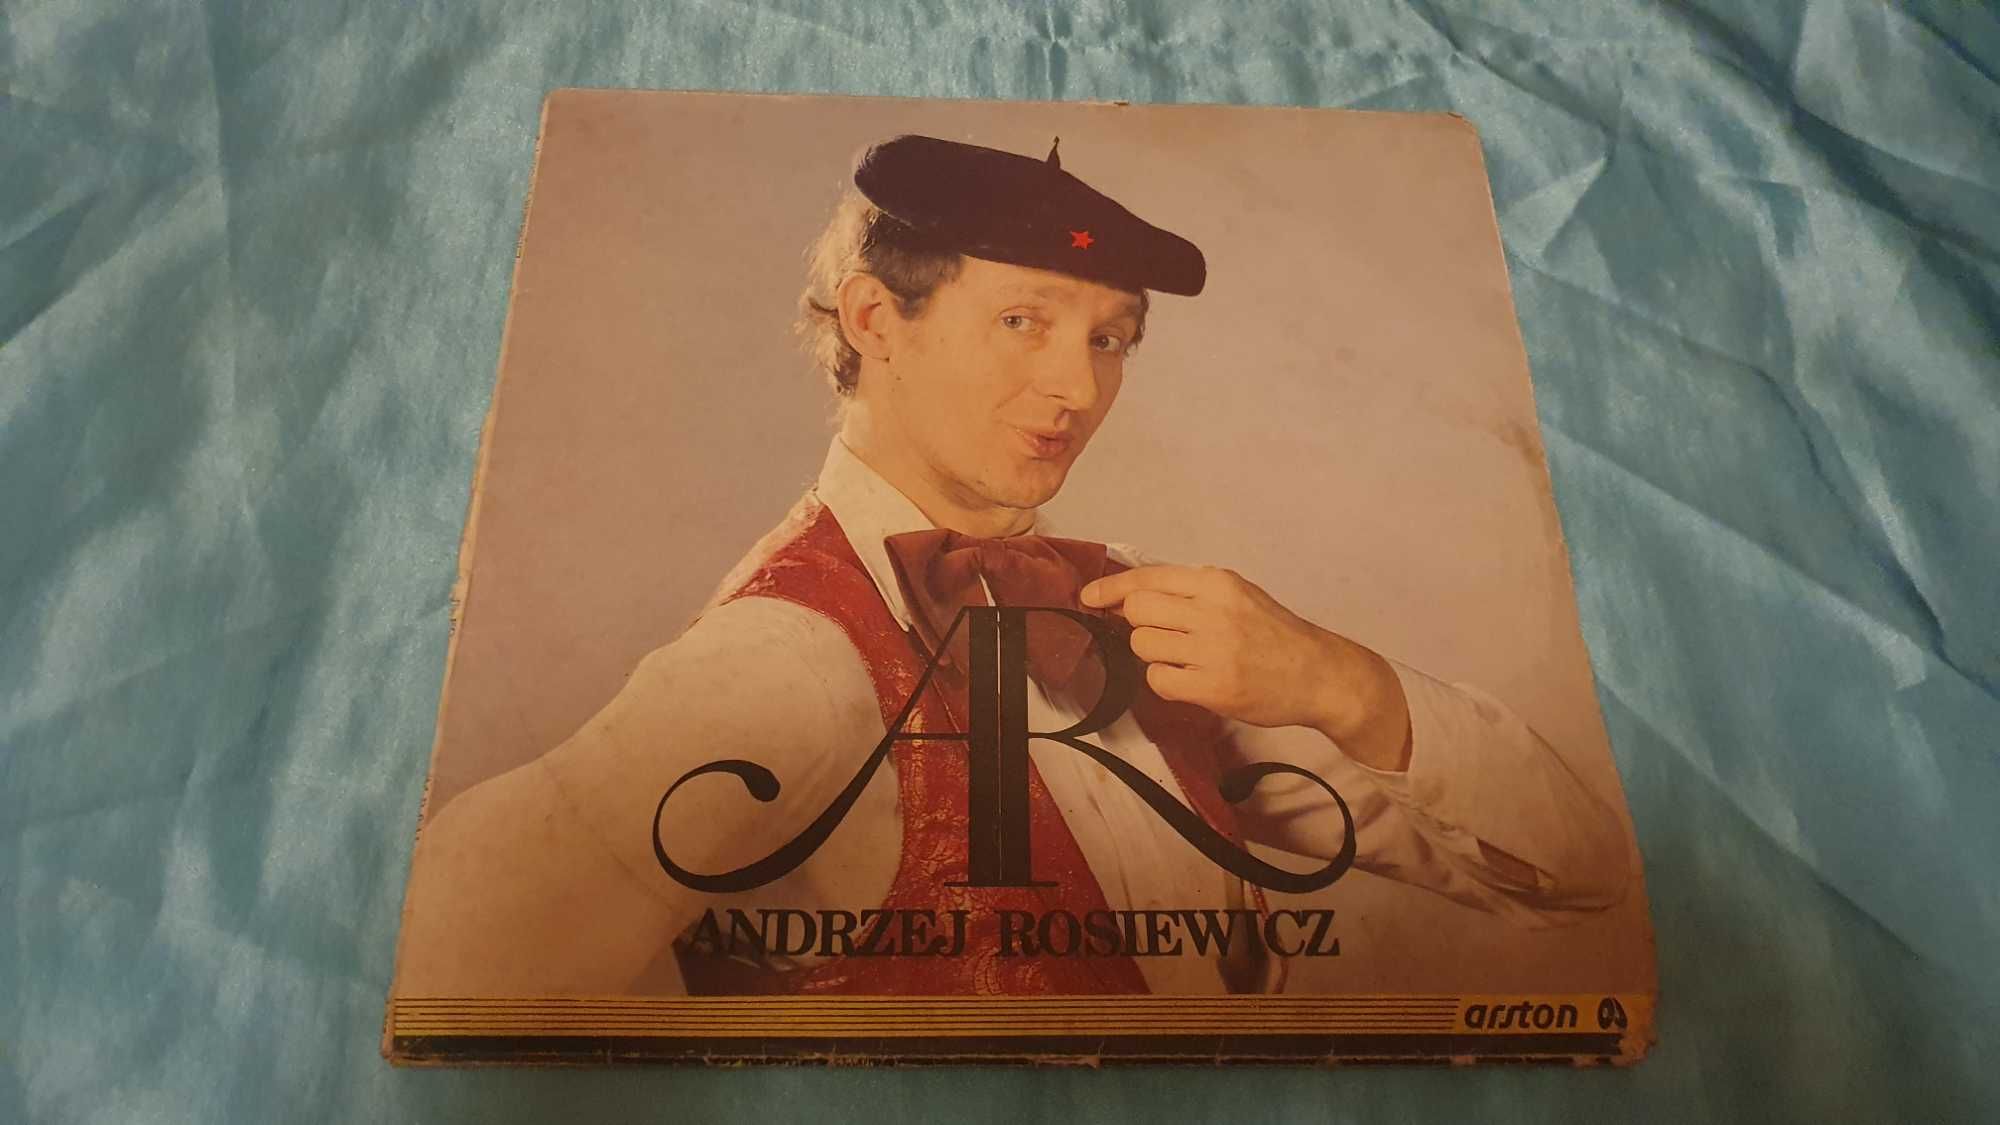 Andrzej Rosiewicz – Andrzej Rosiewicz (1987, Vinyl)